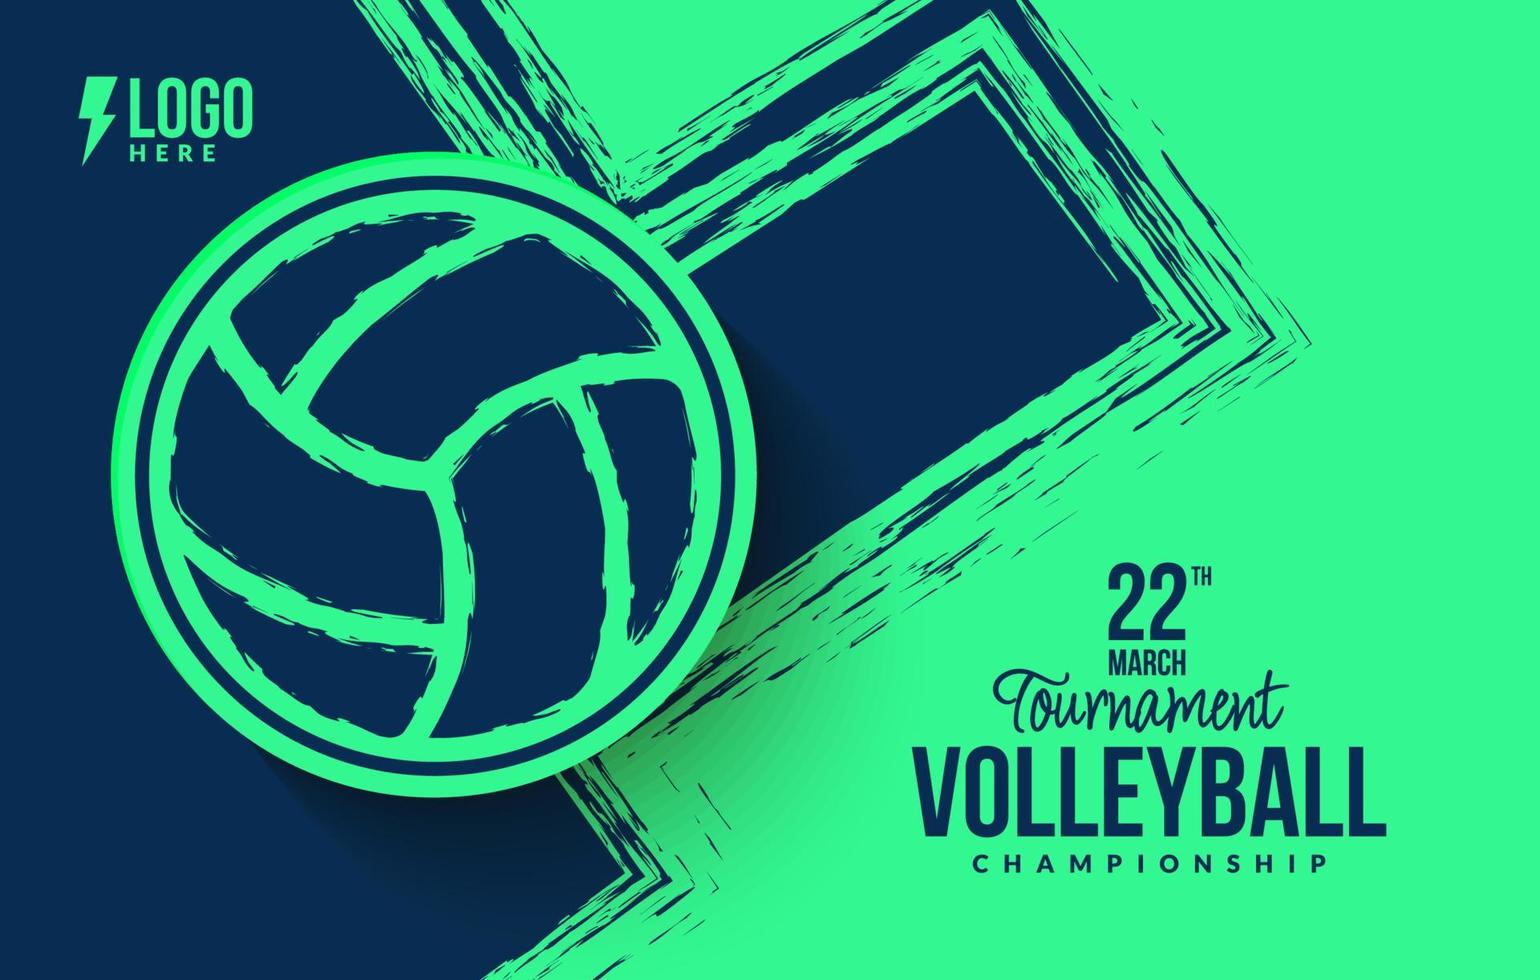 Volleyball-Turnier-Hintergrund, abstraktes Sportsymbol-Template-Design, Banner für Sportereignis-Vektorillustrationen vektor